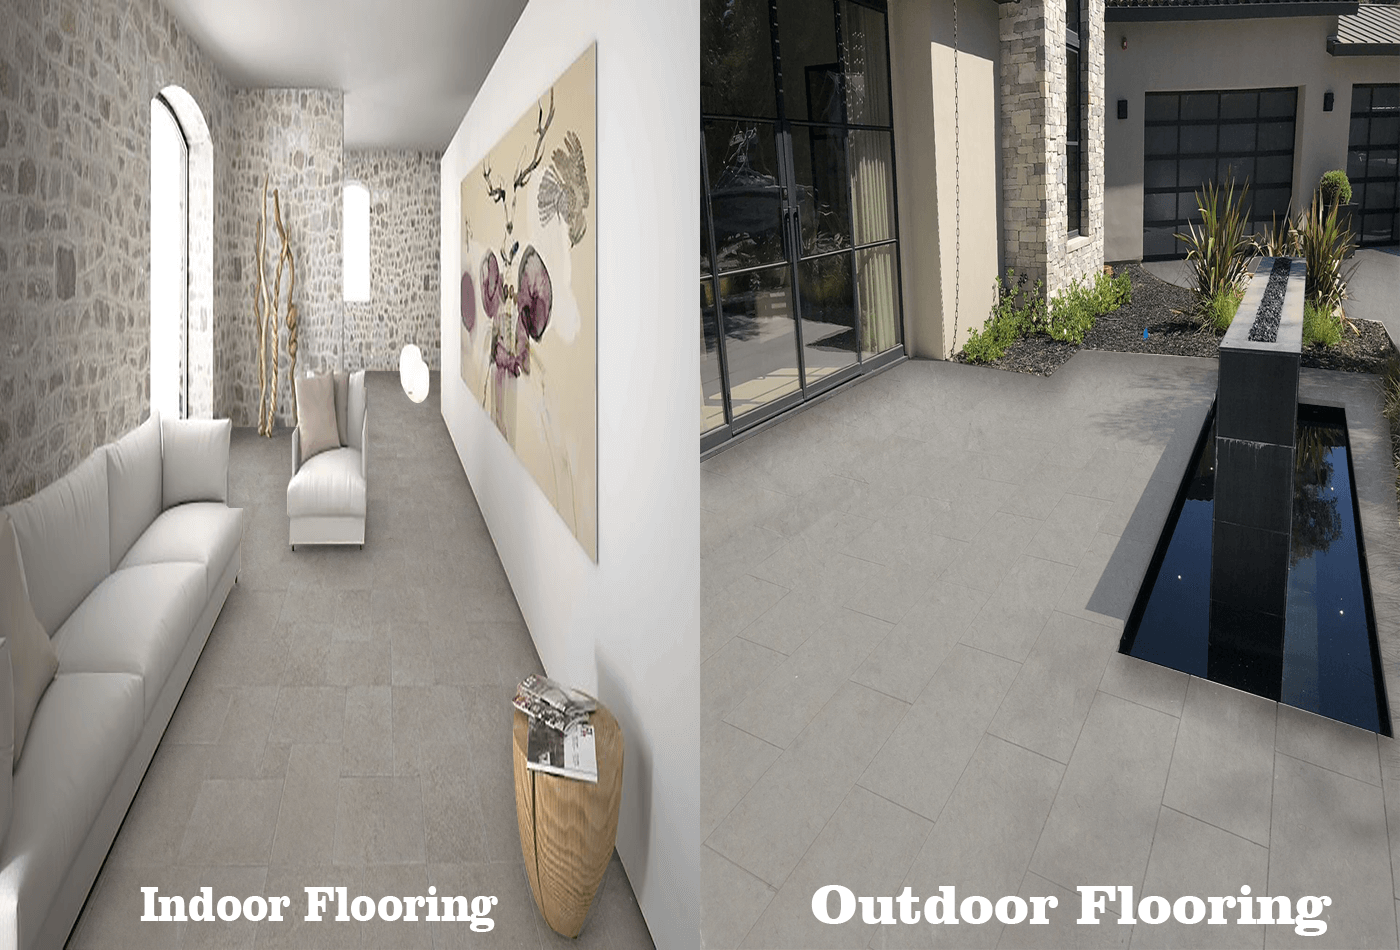 Indoor & Outdoor Flooring of Azul Limestone